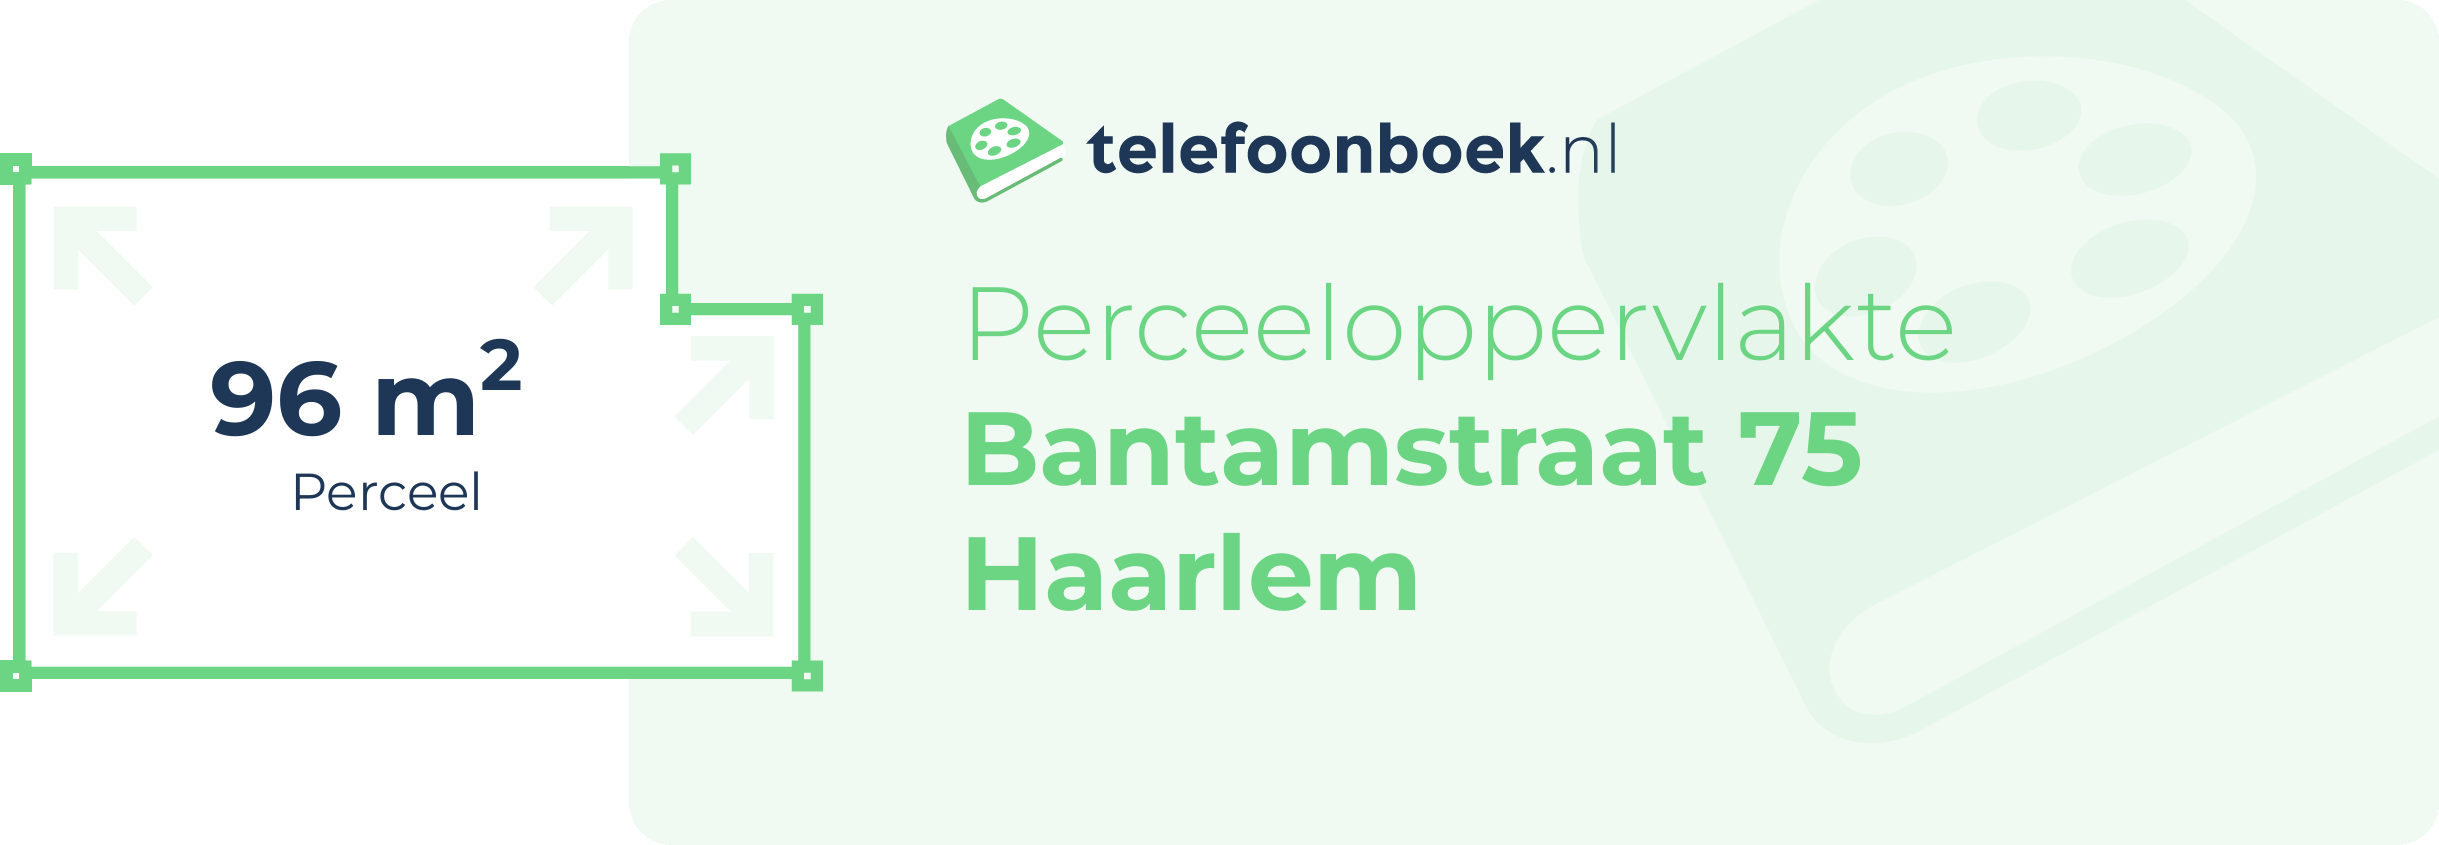 Perceeloppervlakte Bantamstraat 75 Haarlem